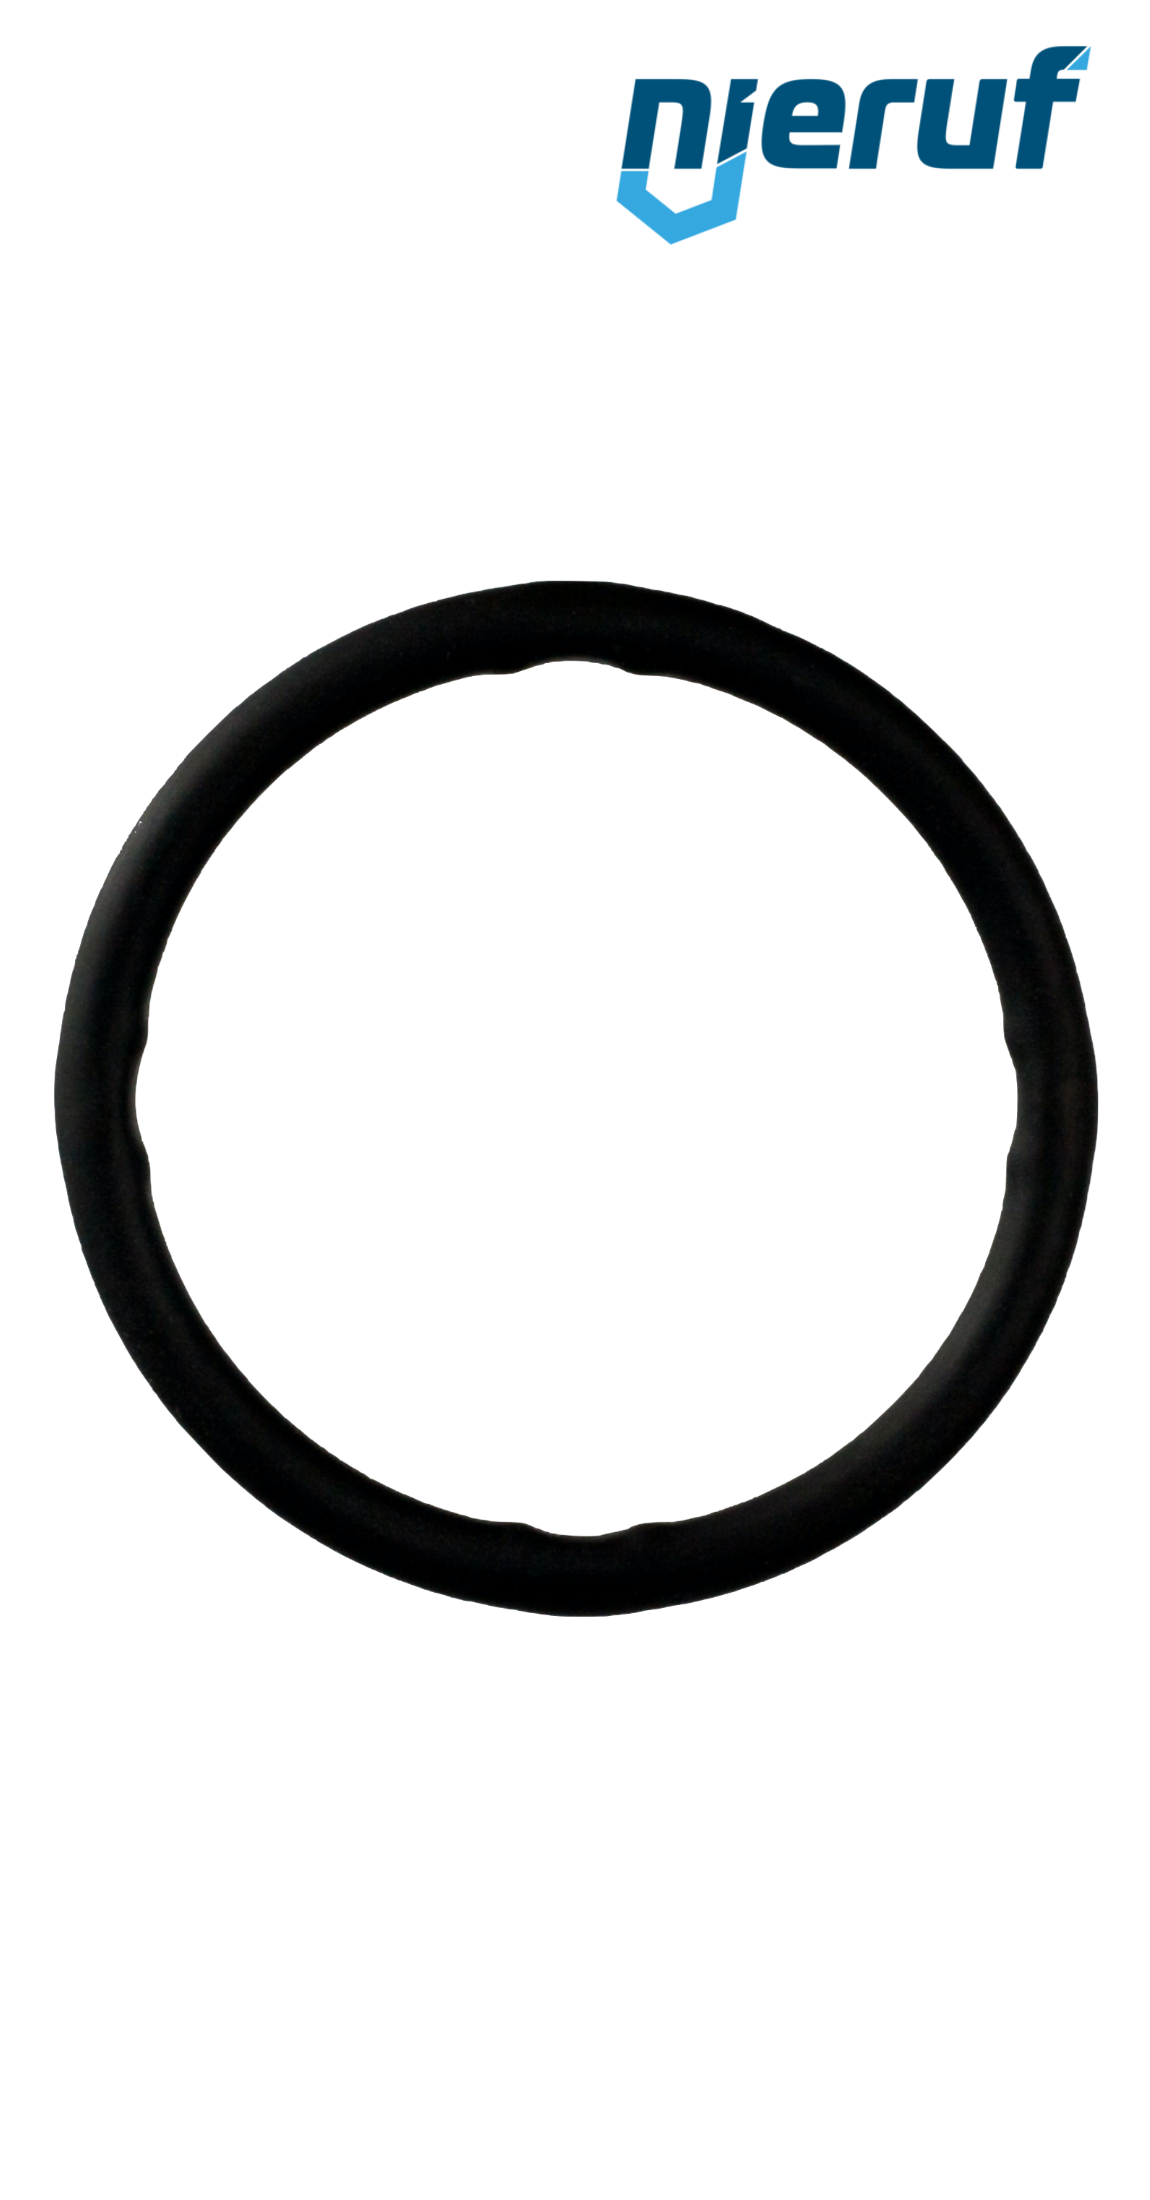 Pierścień uszczelniający EPDM do złączki zaciskanej DN15 - 18,0 mm